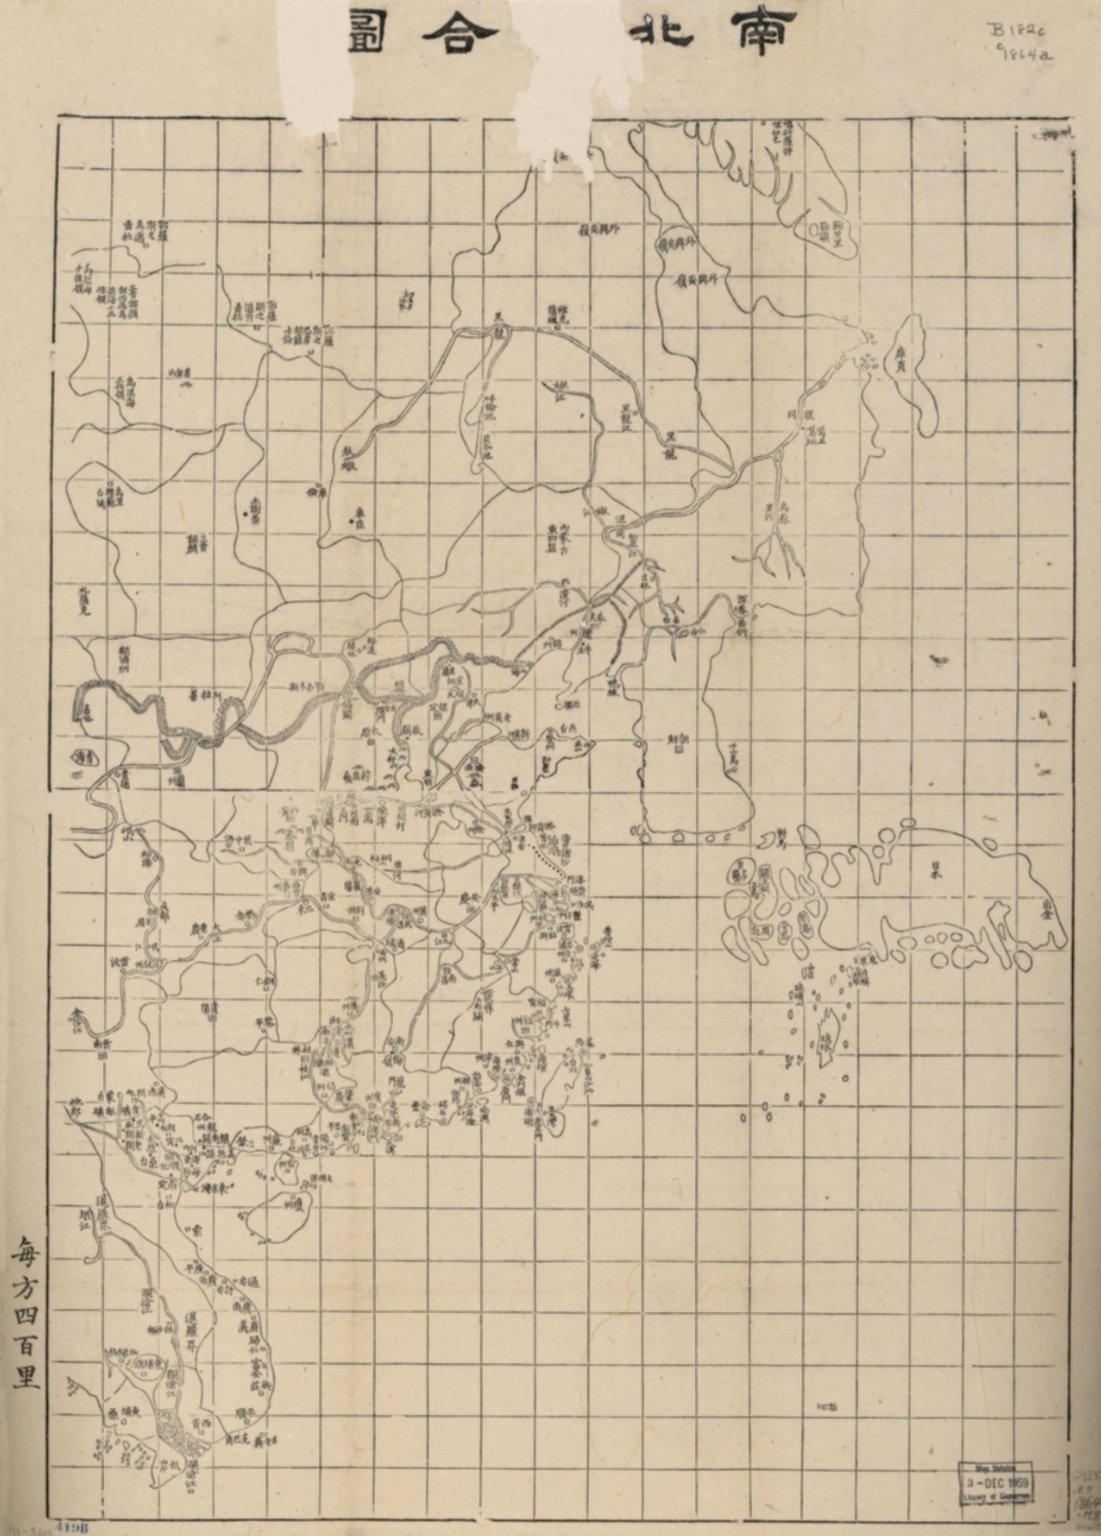 南北洋合圖 = Coastal map of Imperial Qing